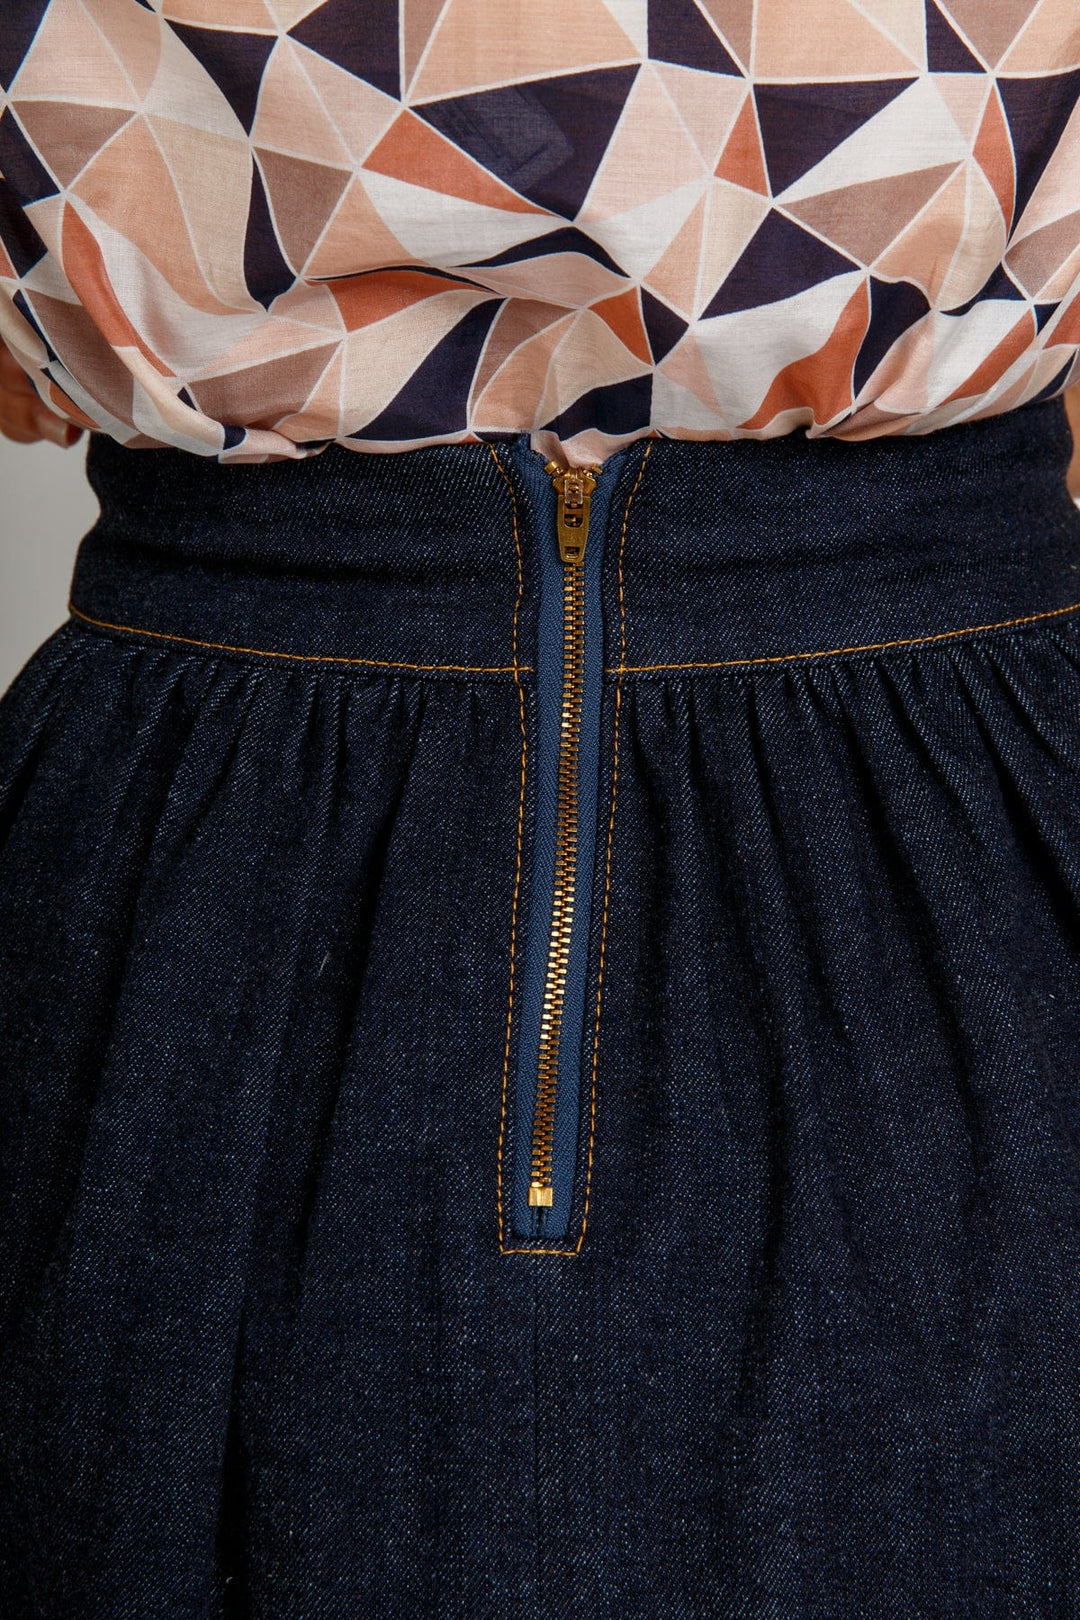 Brumby Skirt - Sizes 0-20 - Megan Nielsen